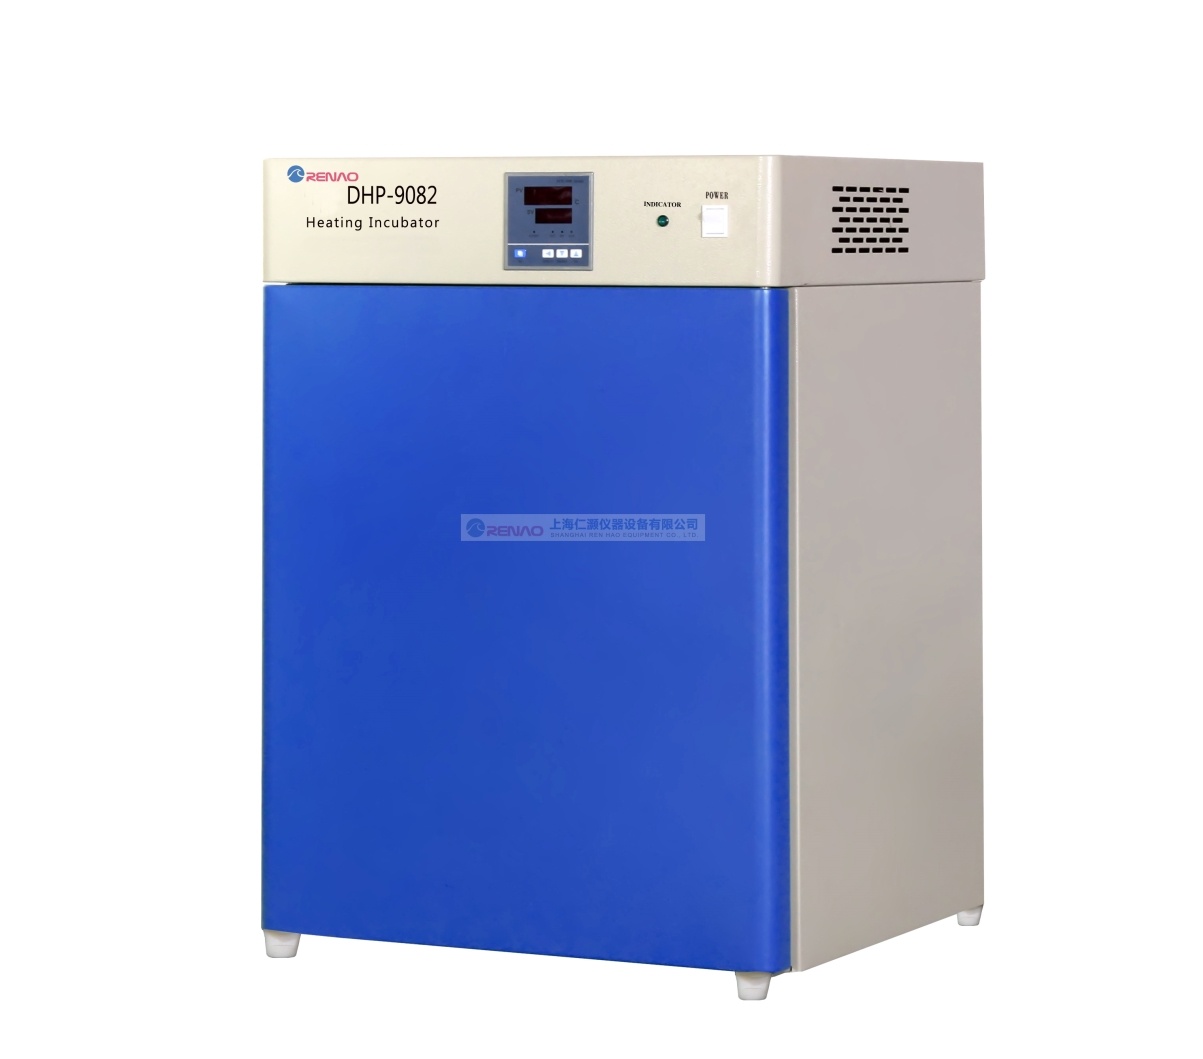 【仁灏】DHP-9082电热恒温培养箱/微生物培养箱